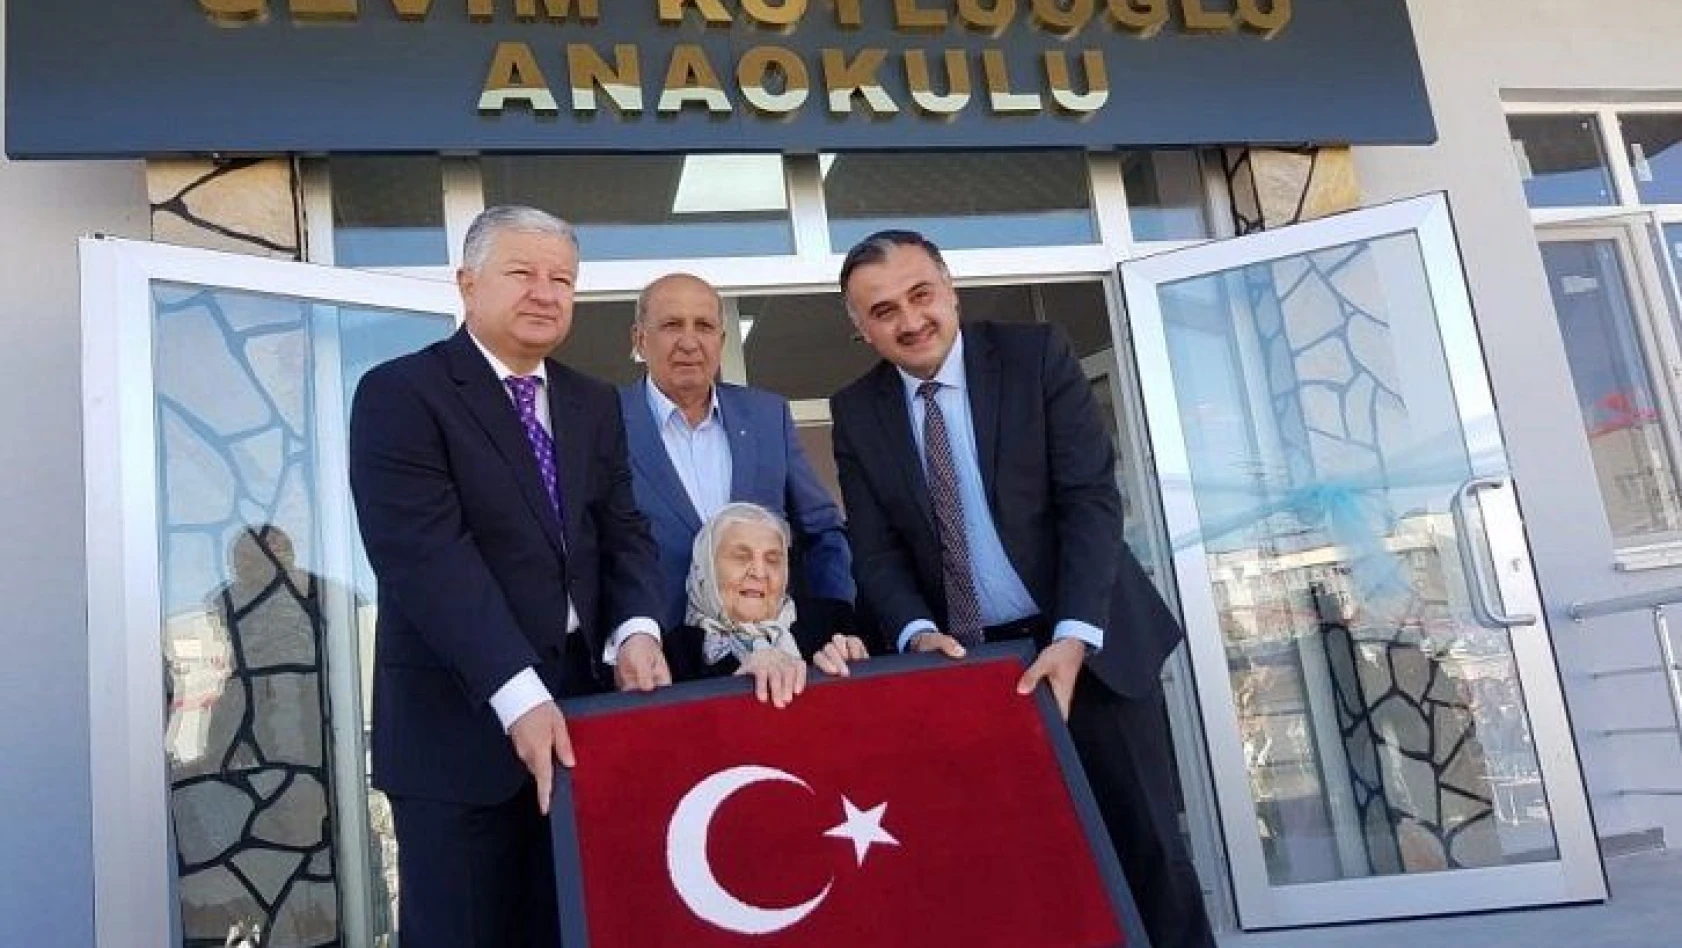 Sevim Köylüoğlu Anaokulu törenle açıldı